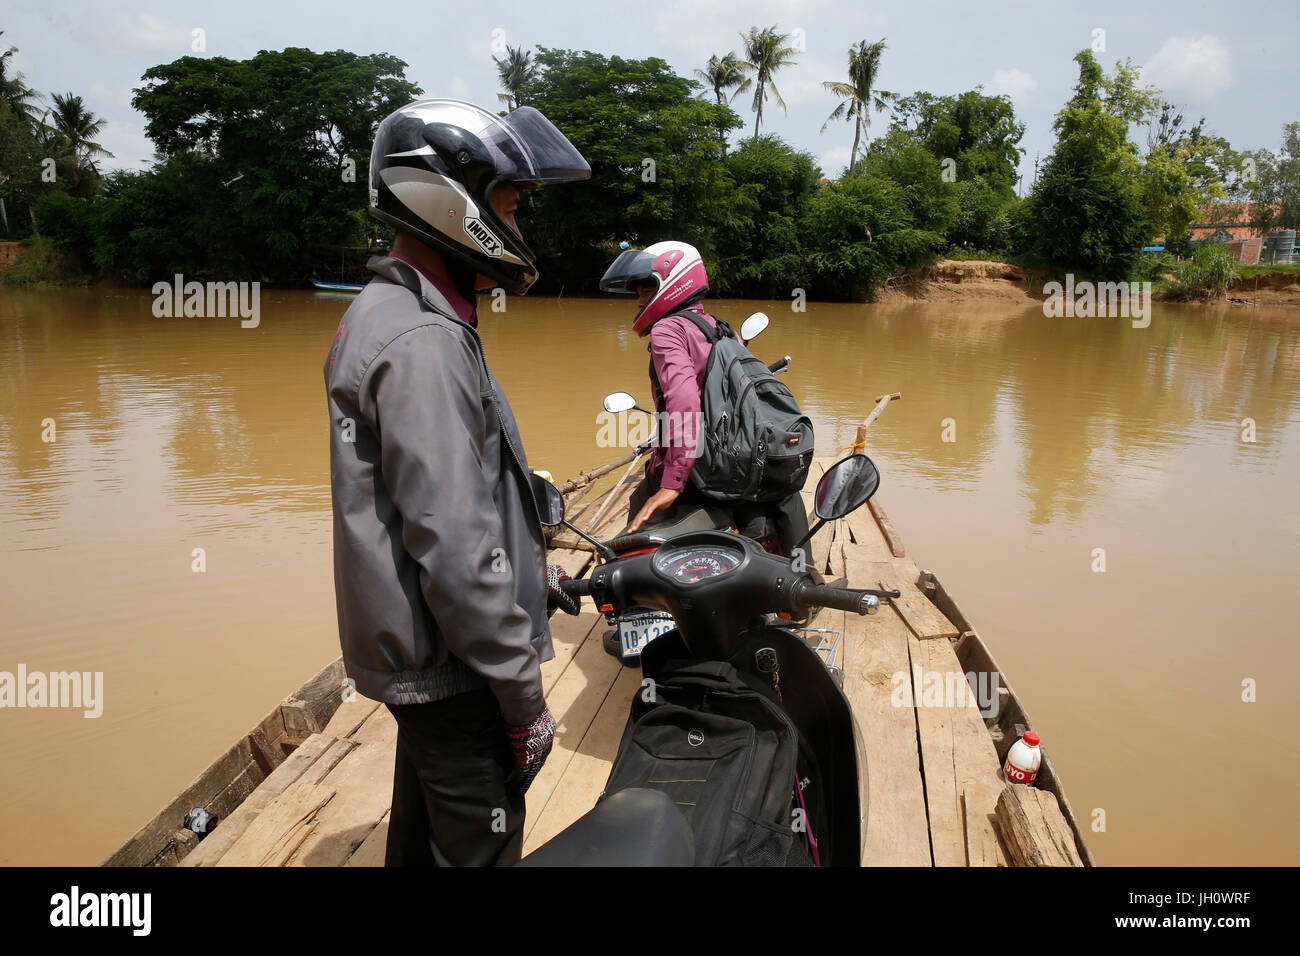 AMK microfinanziamenti dipendenti attraversando il fiume Sangke per visitare i clienti. Cambogia. Foto Stock